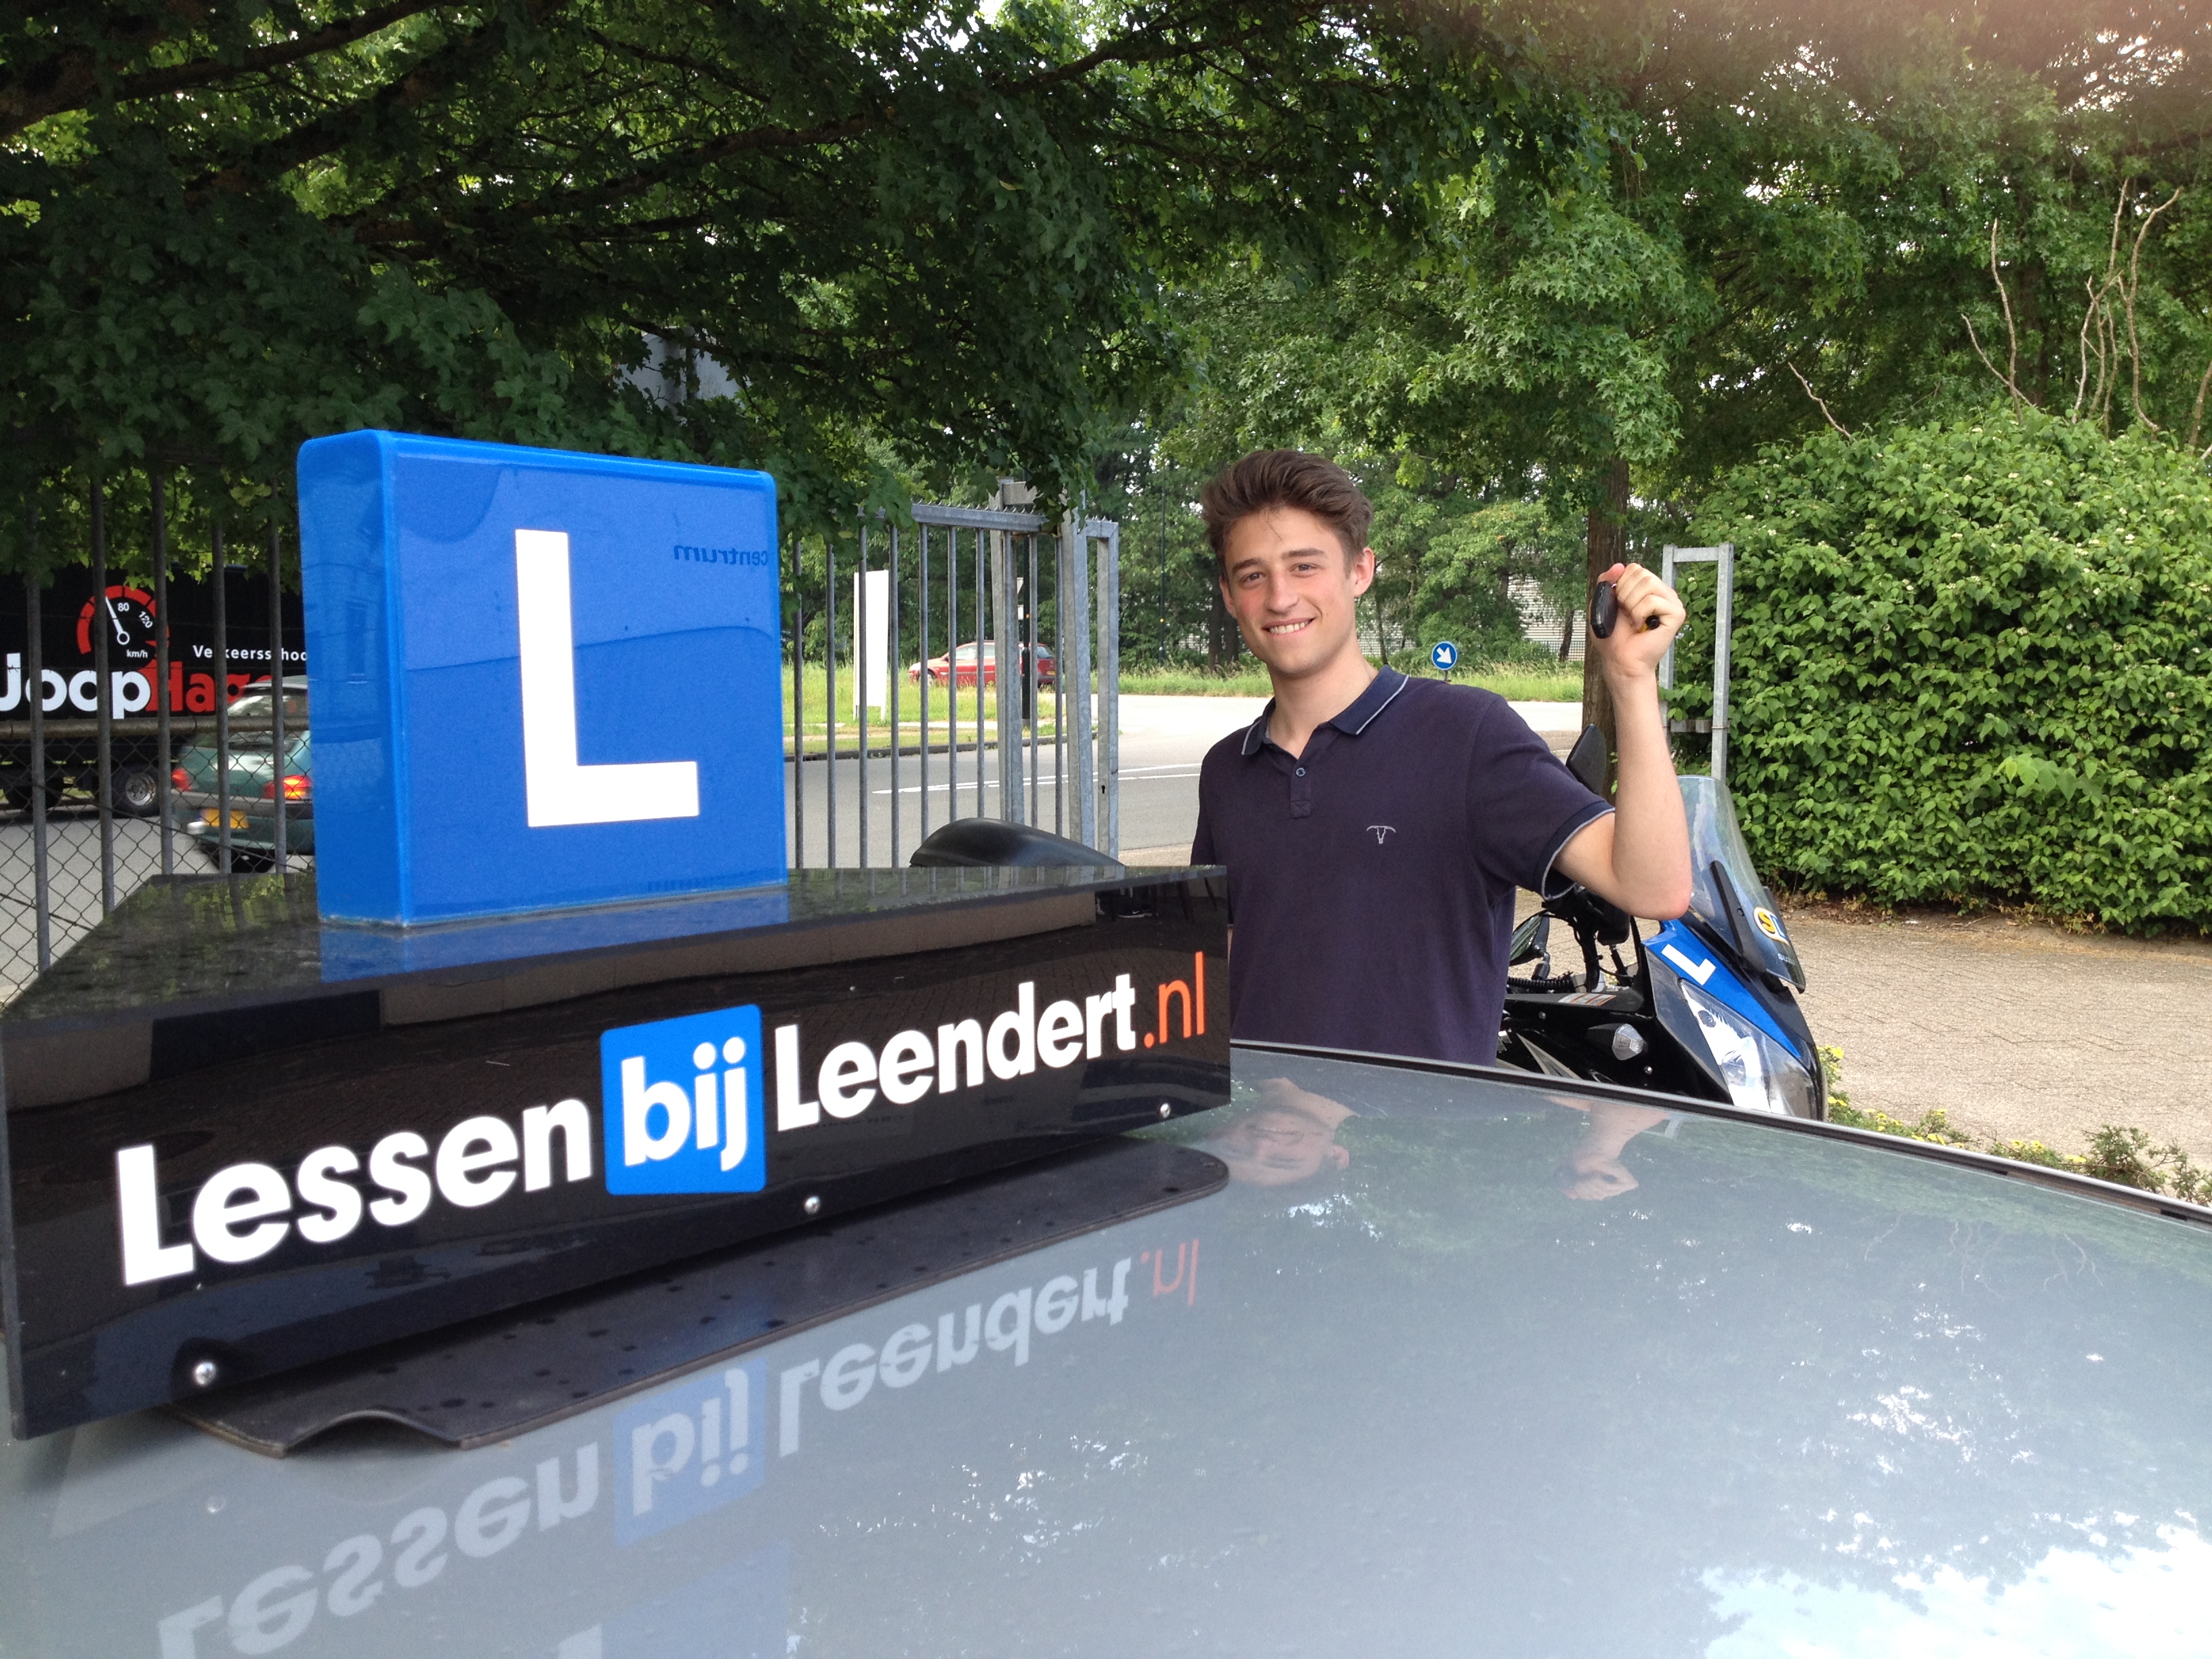 Michael geslaagd voor rijbewijs bij rijschool LessenbijLeendert Apeldoorn